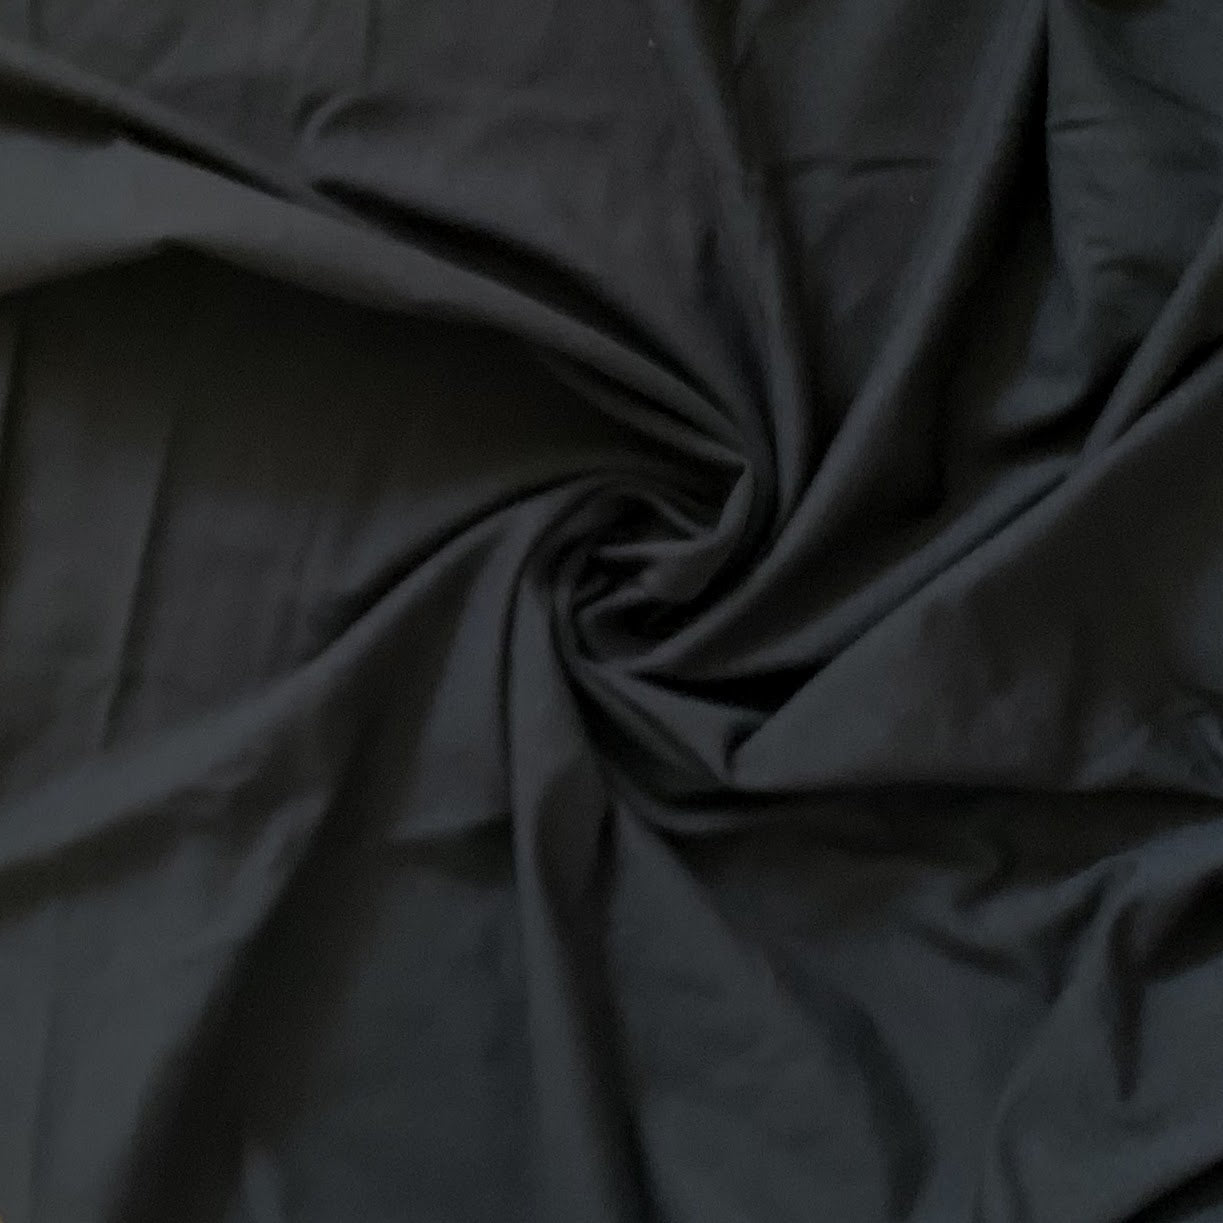 Black 100% Cotton Jersey - 1/2 Yard - Riverside Fabrics